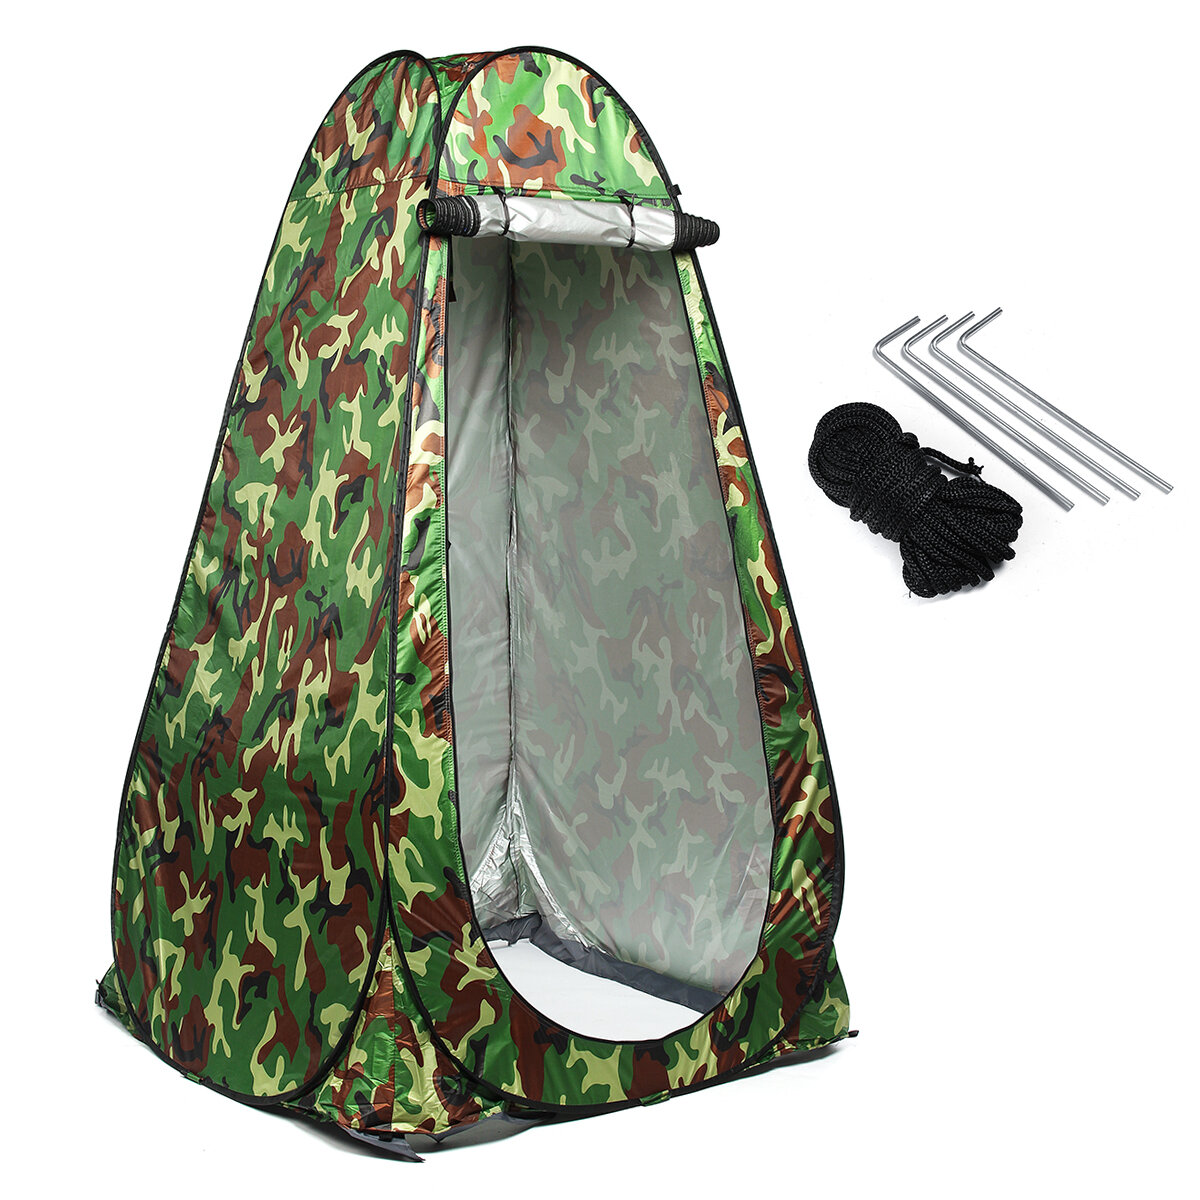 Tenda doccia istantanea da 190 cm per campeggio, bagno, spogliatoio privato, impermeabile, a prova di UV, tenda da pesca.